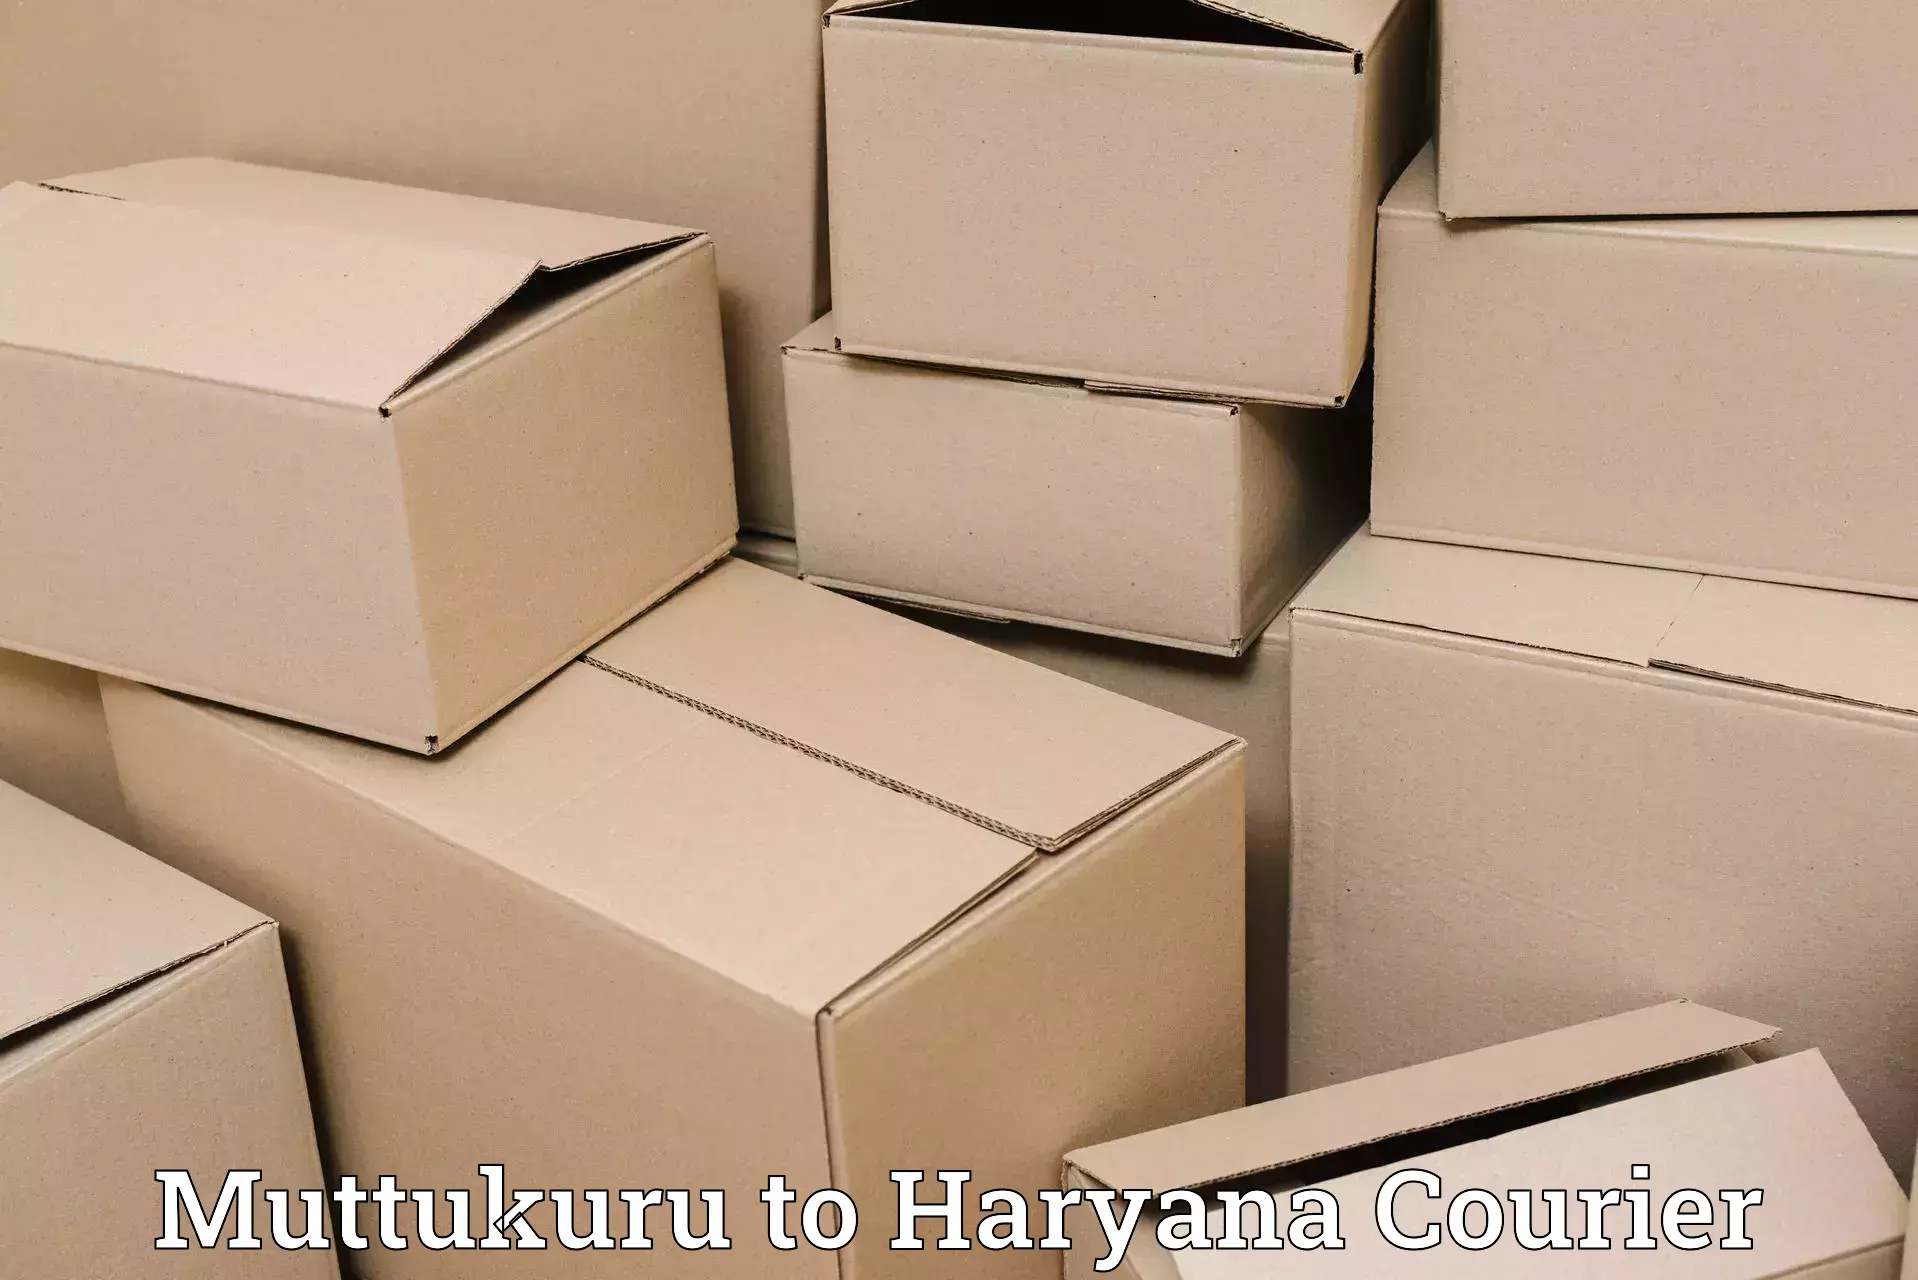 Premium courier solutions Muttukuru to Dharuhera